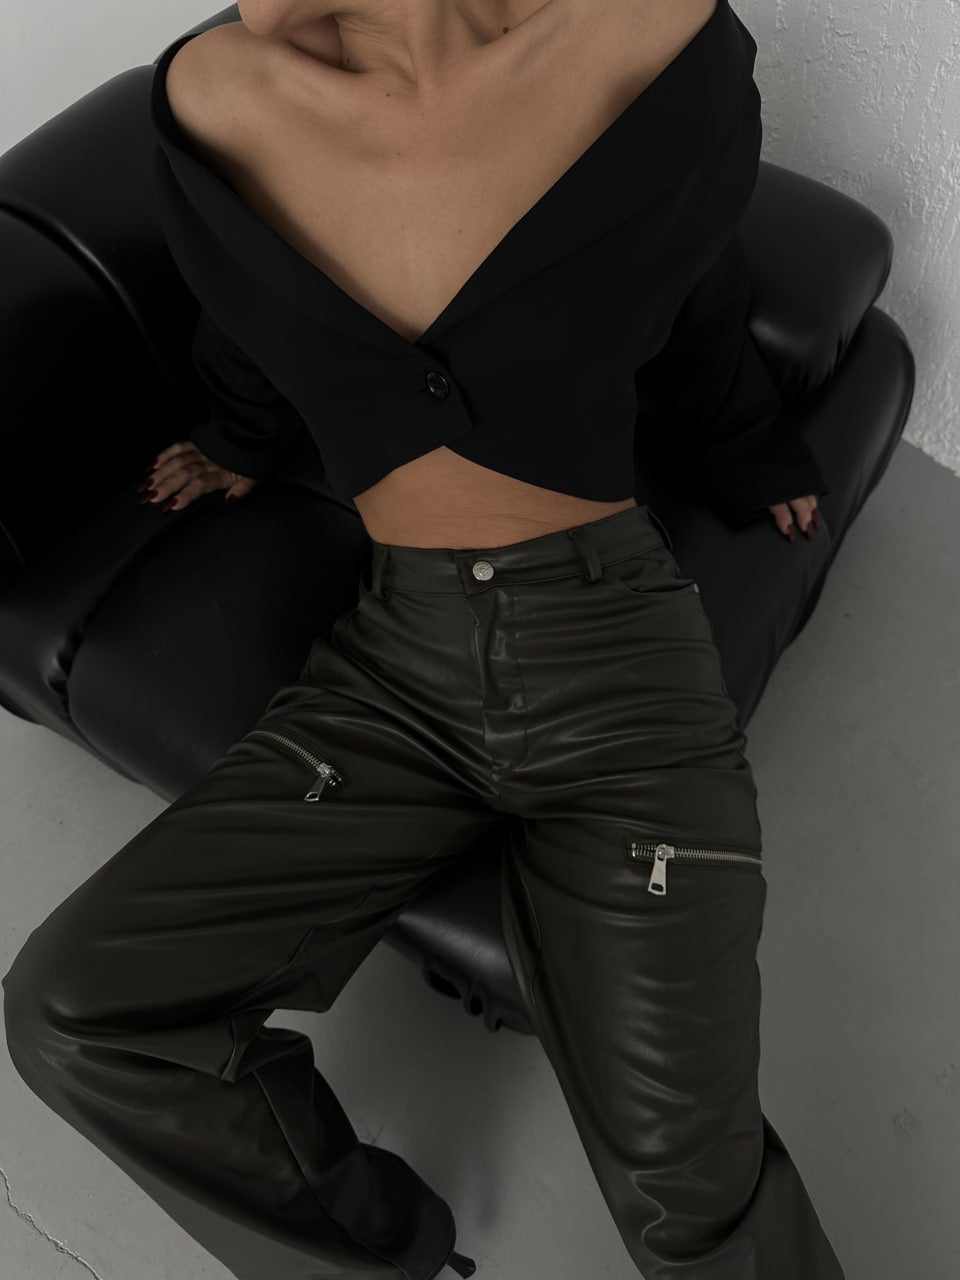 Дамски панталон Lori  https://bvseductive.com/products/дамски-панталон-lori  маслено зелен панталон от изкуствена кожа с висока талия, удължаваща силуета актуален модел с разкроени крачоли отличен избор за Вашата тренди визия